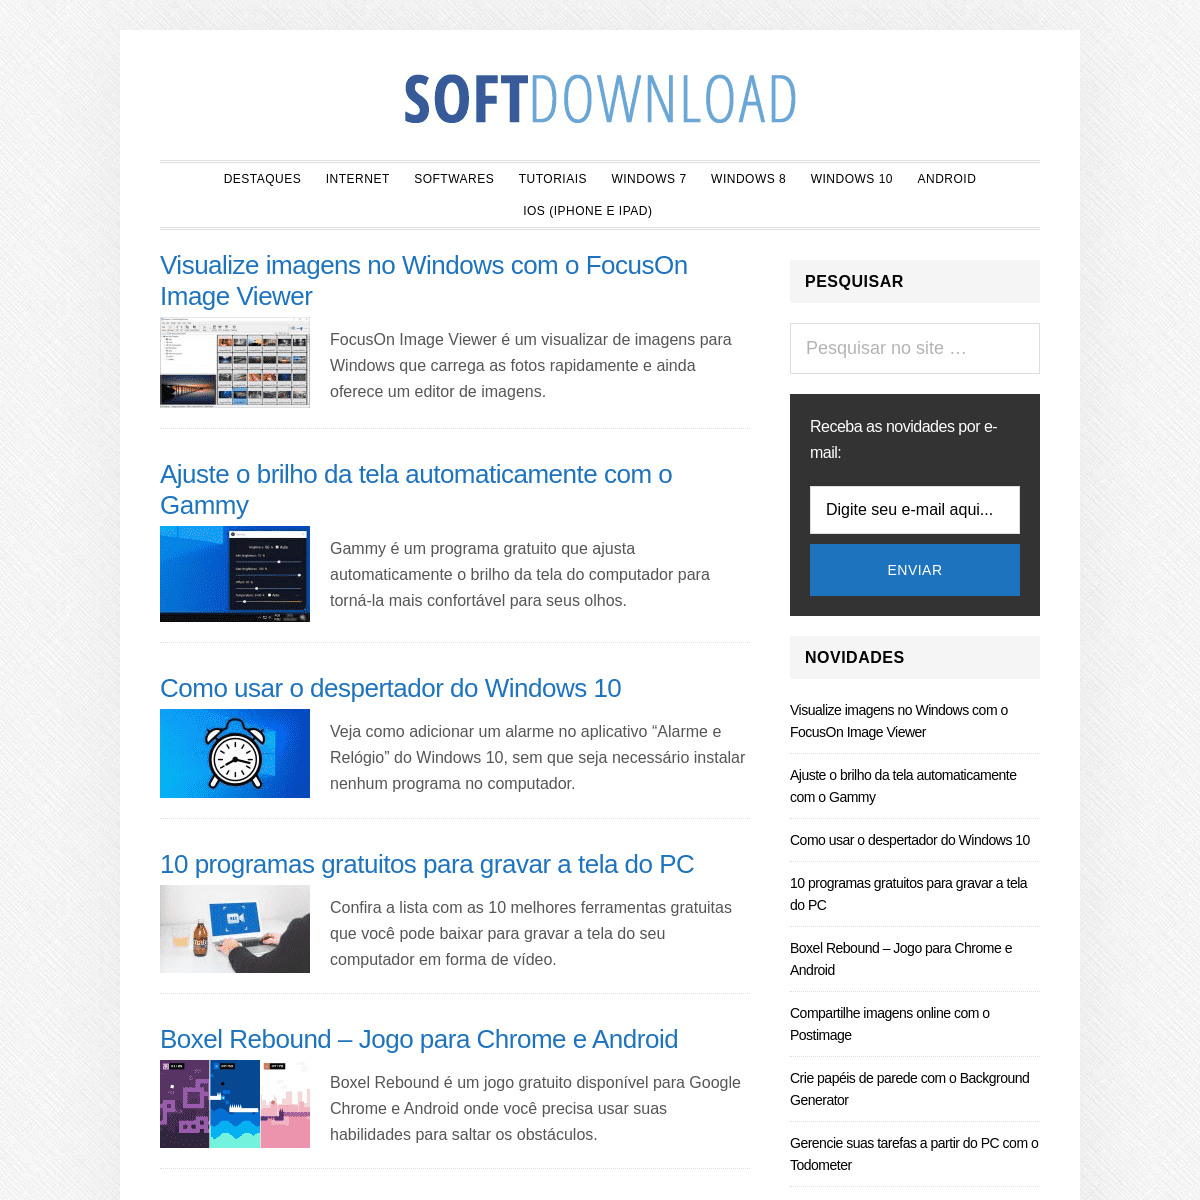 A complete backup of softdownload.com.br